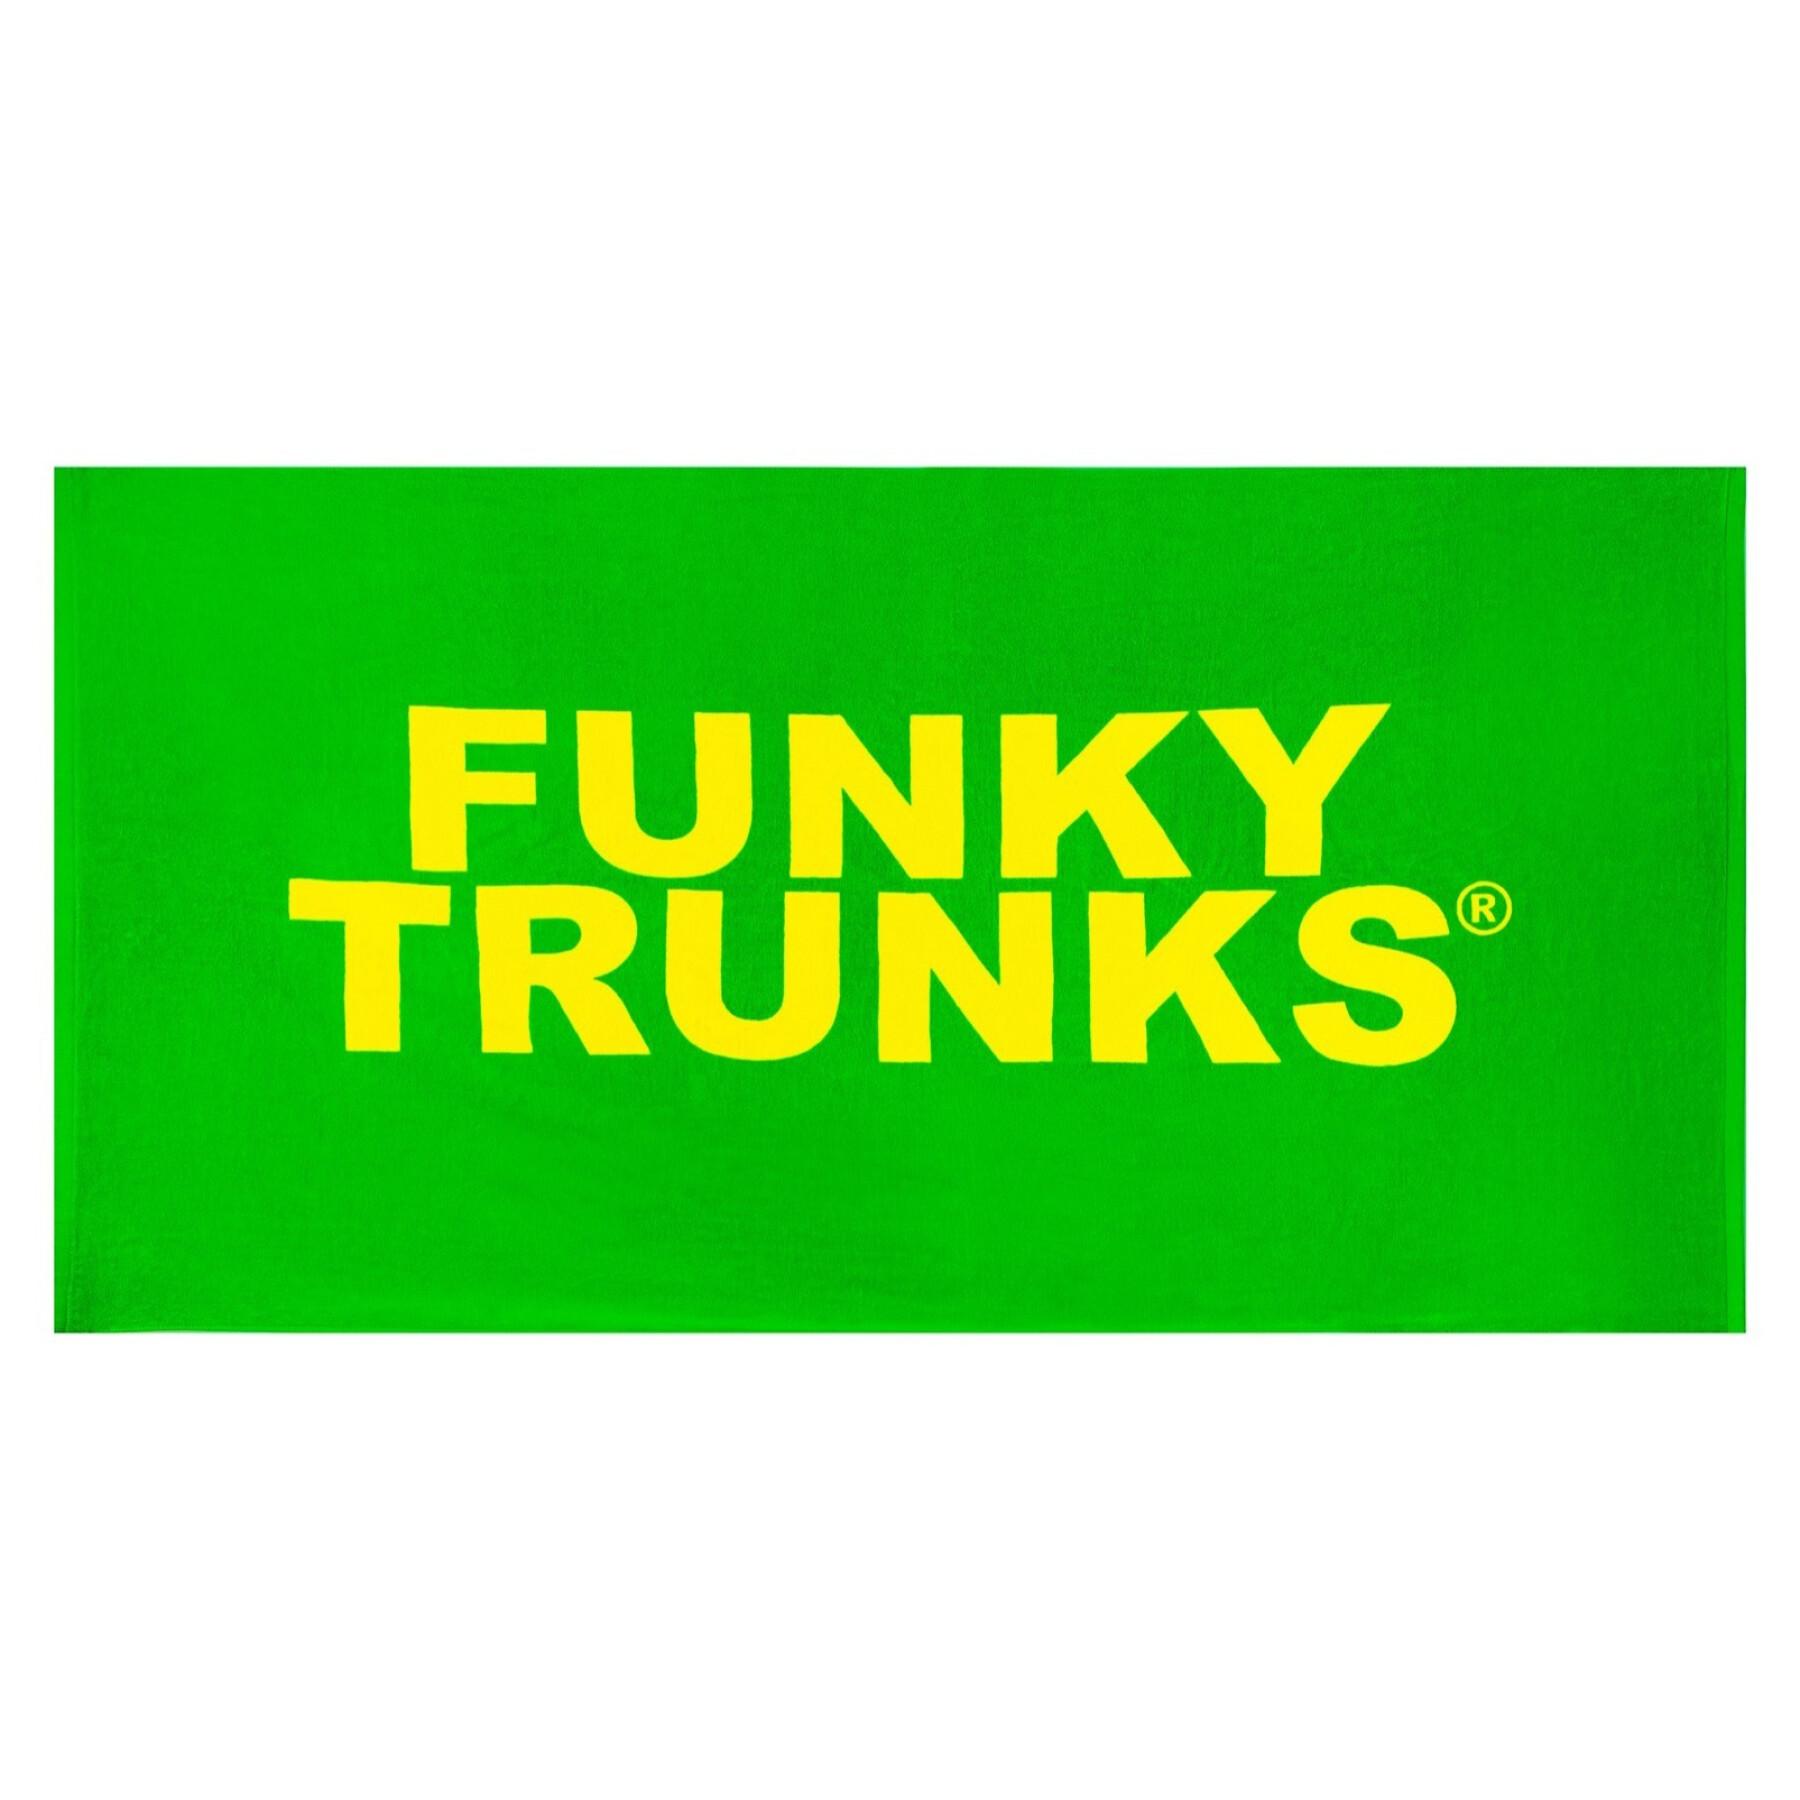 Handduk Funky Trunks